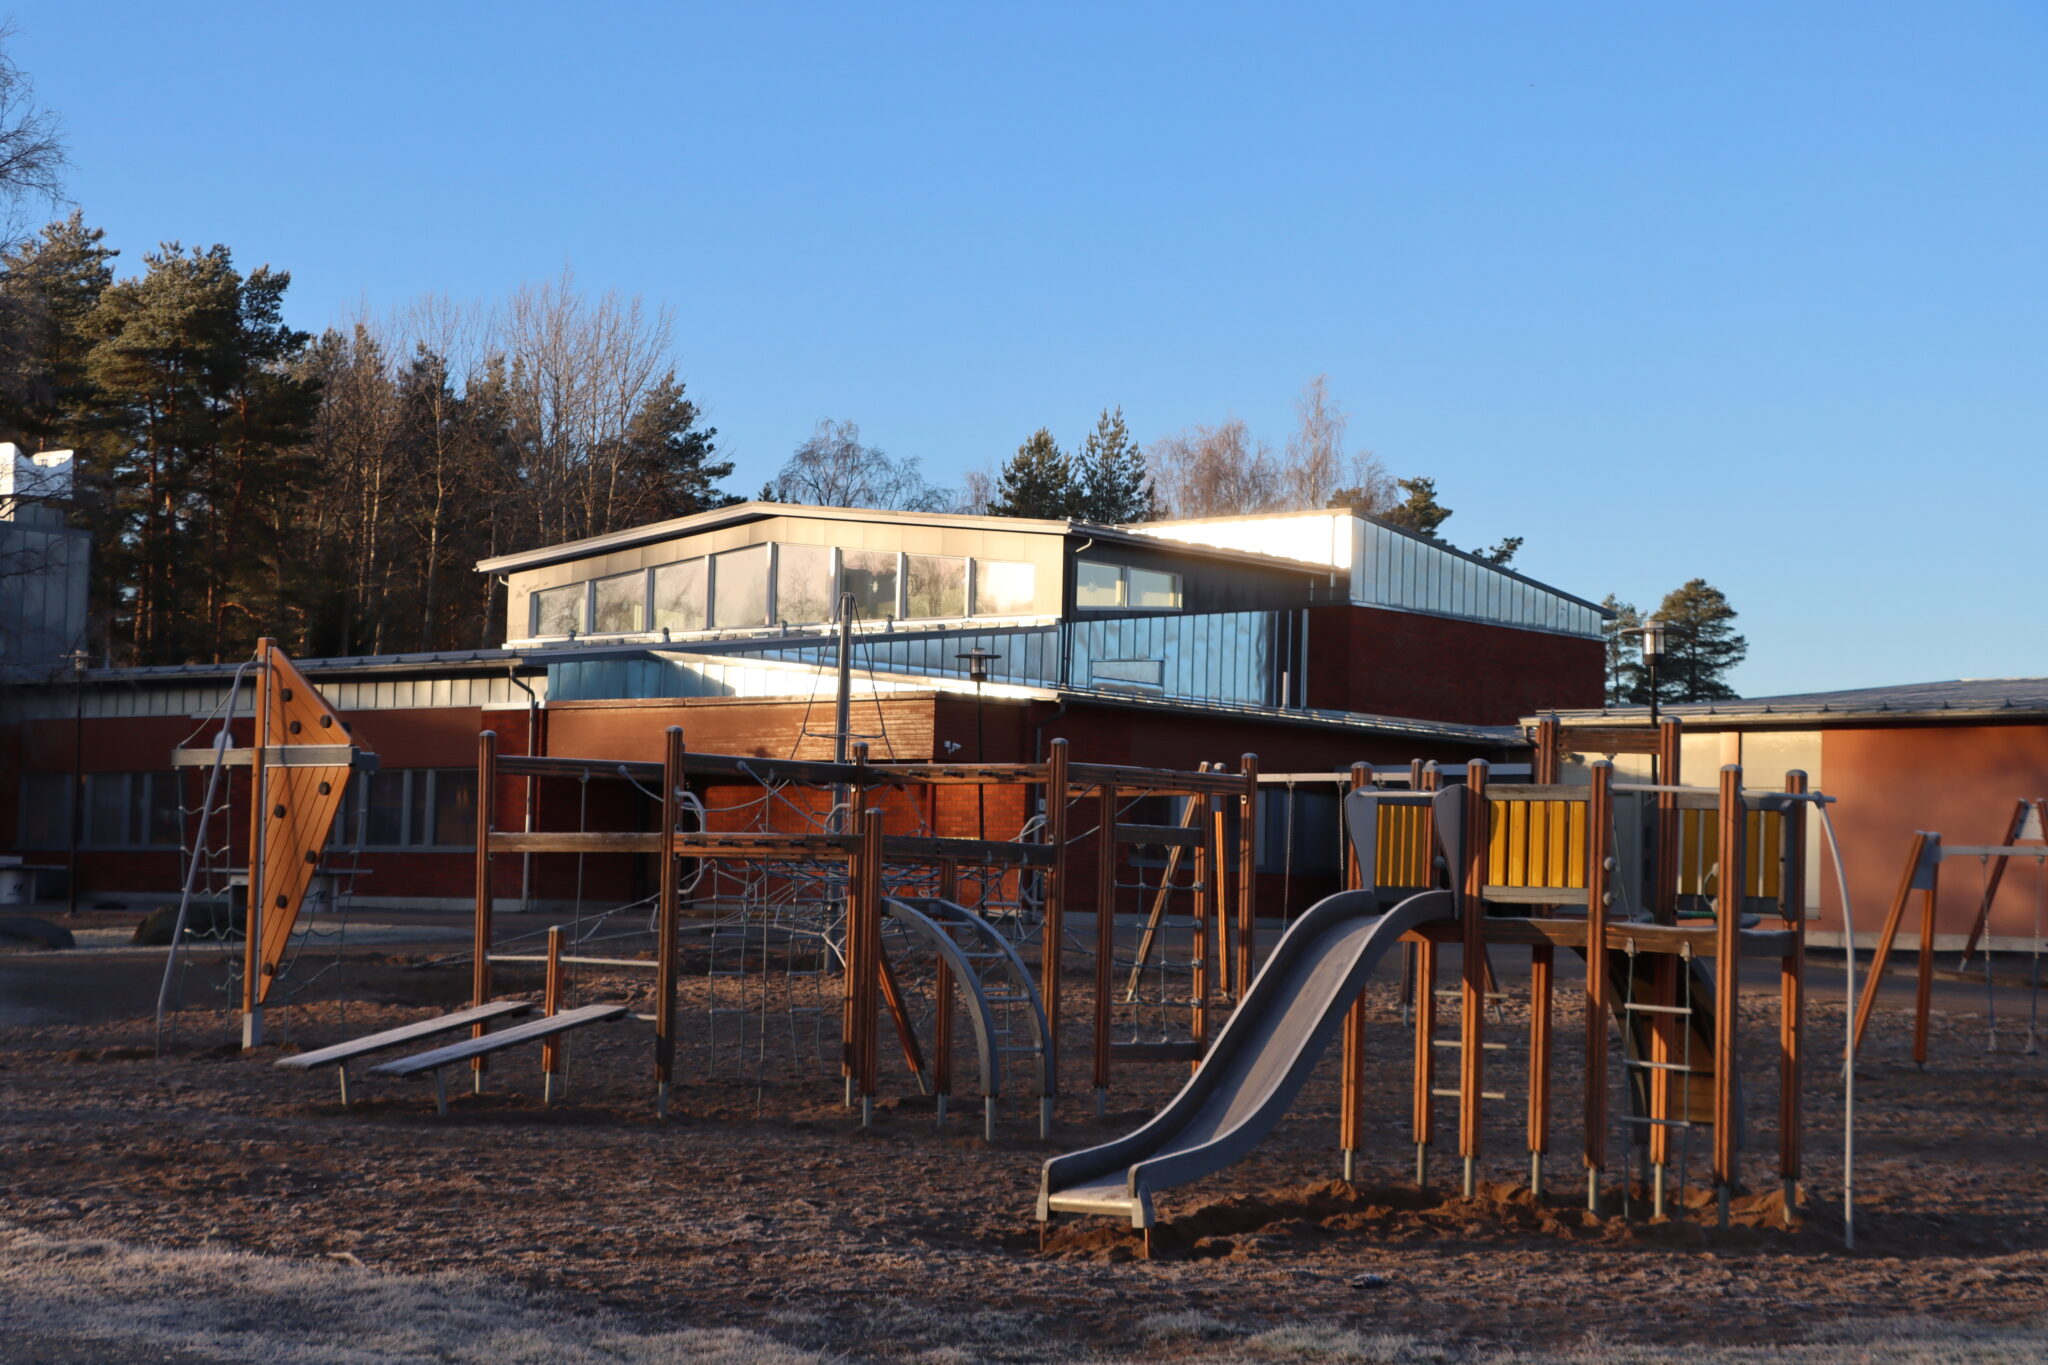 Holm skolas gårdsplan med klätterställningar och rutschbana